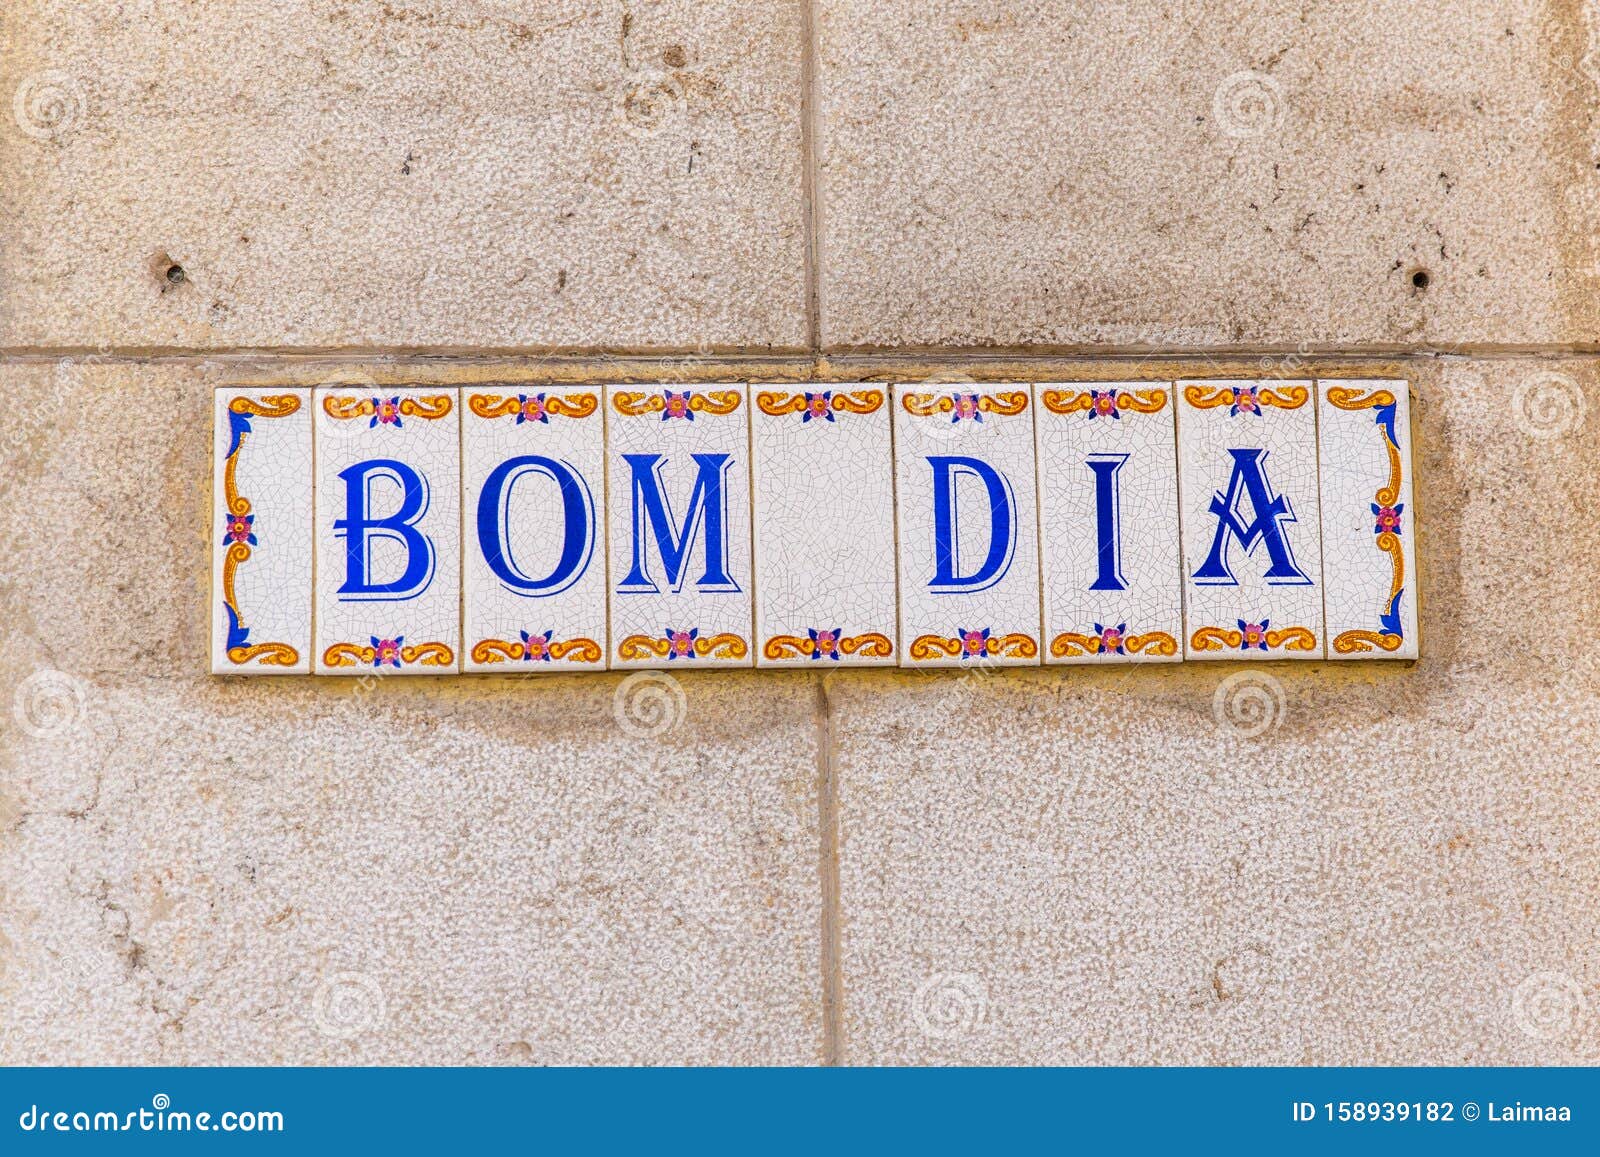 Bom Dia Good Morning Fliesen Oder Azulejo Auf Einem Gebäude in Lissabon  Stockfoto - Bild von wort, portugiesisch: 158939182